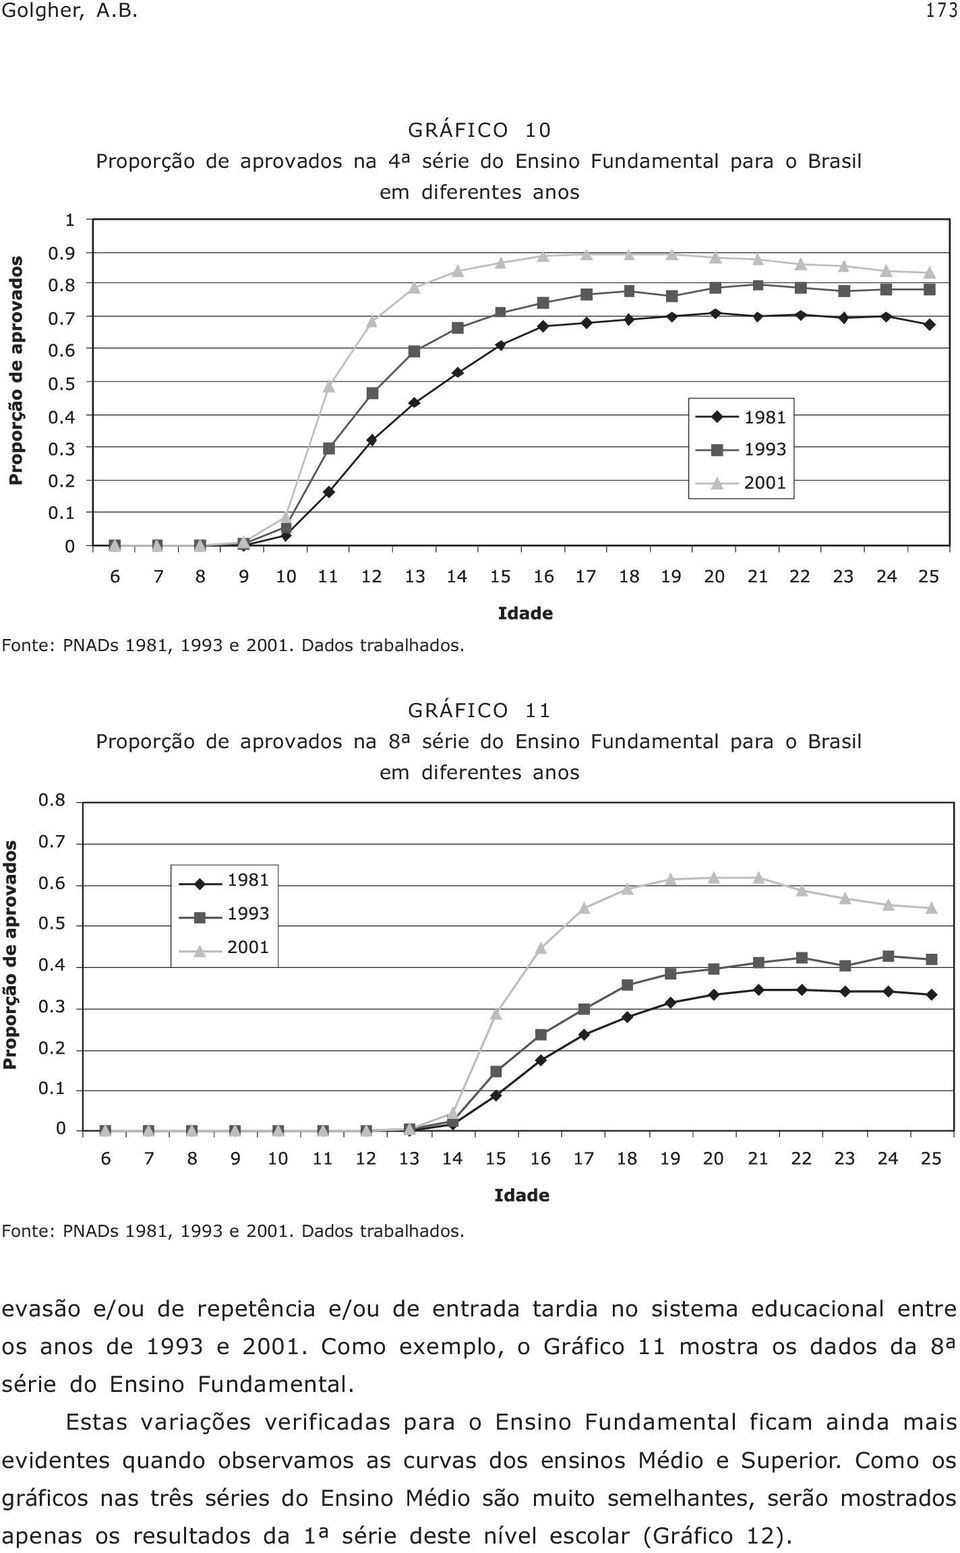 evasão e/ou de repetência e/ou de entrada tardia no sistema educacional entre os anos de 1993 e 2001. Como exemplo, o Gráfico 11 mostra os dados da 8ª série do Ensino Fundamental.